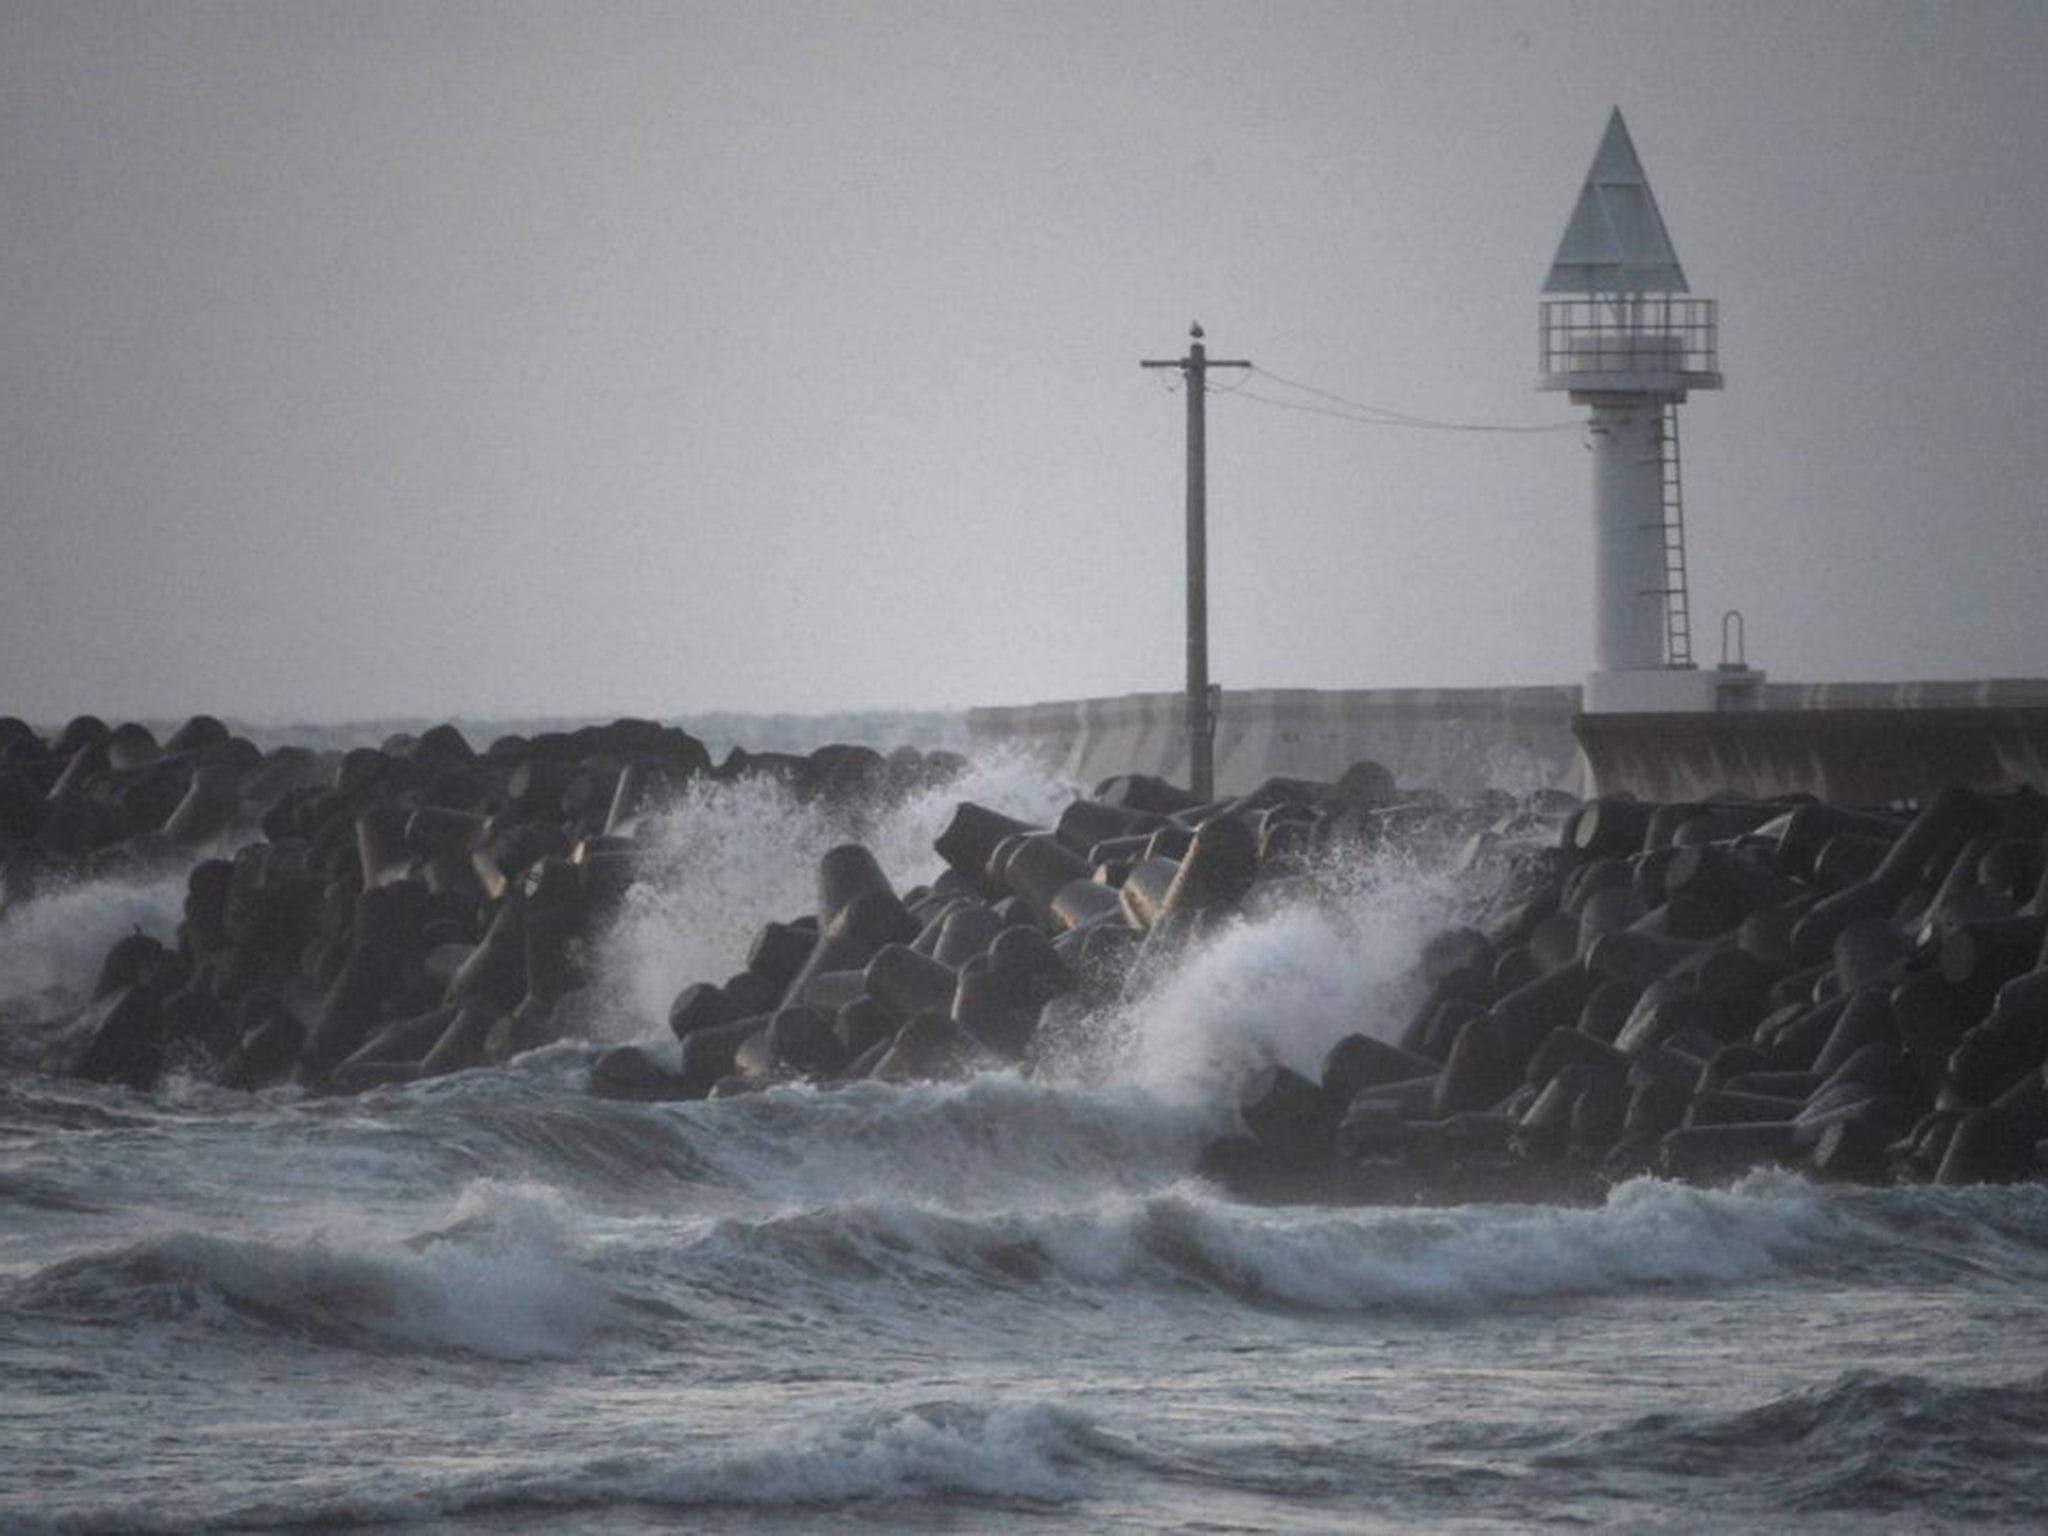 Sea defences did not stop tsunami damage